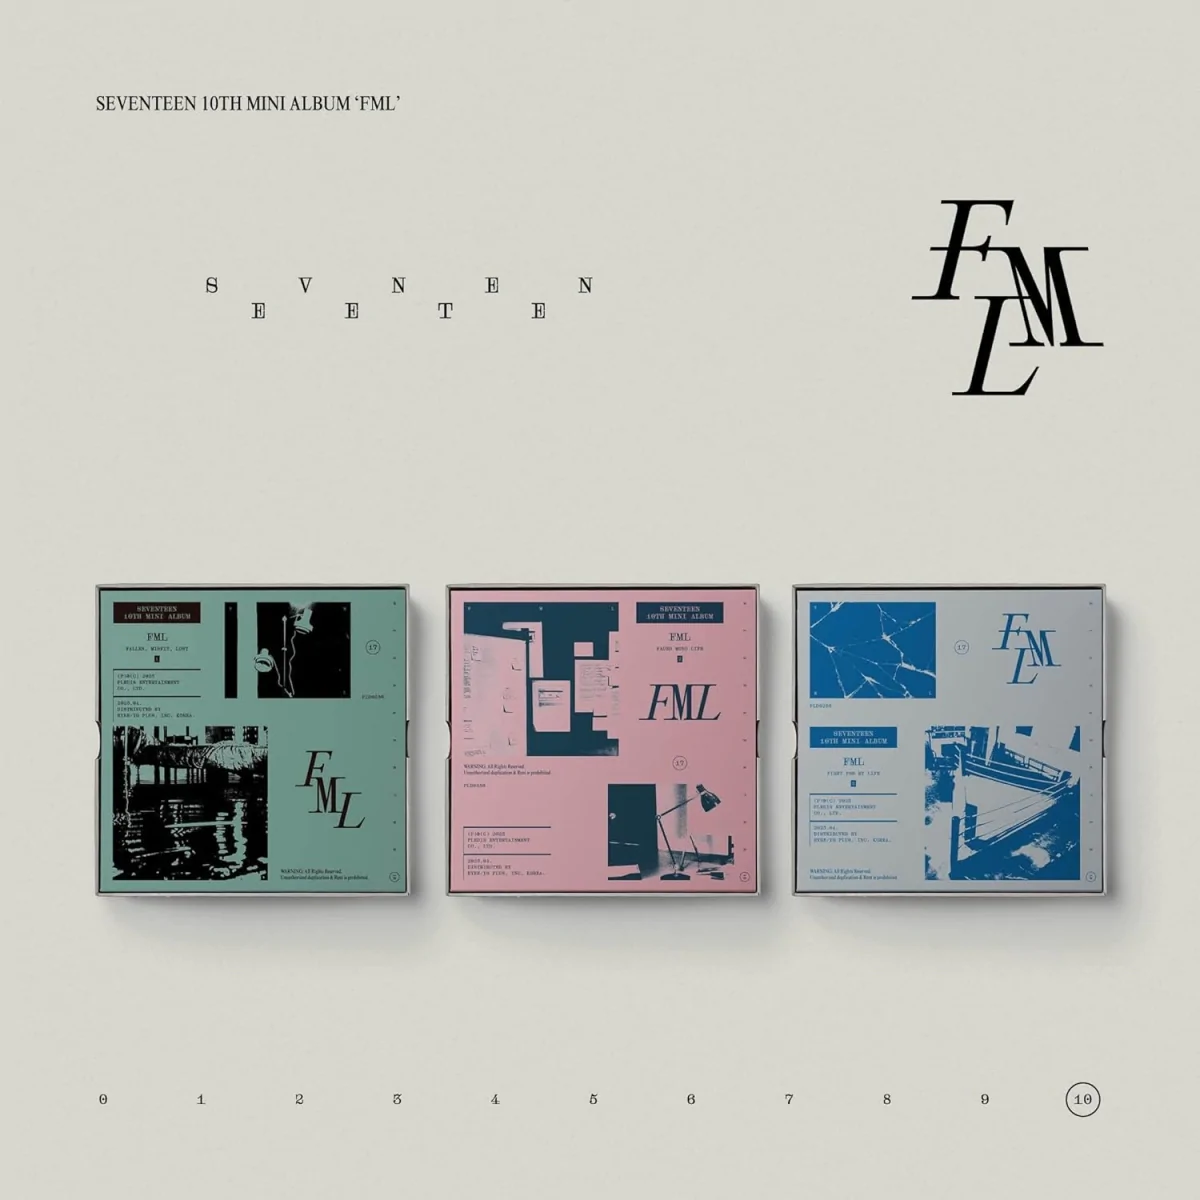 SEVENTEEN - FML (Fallen, Mistif, Lost Version) (10th Mini Album) 